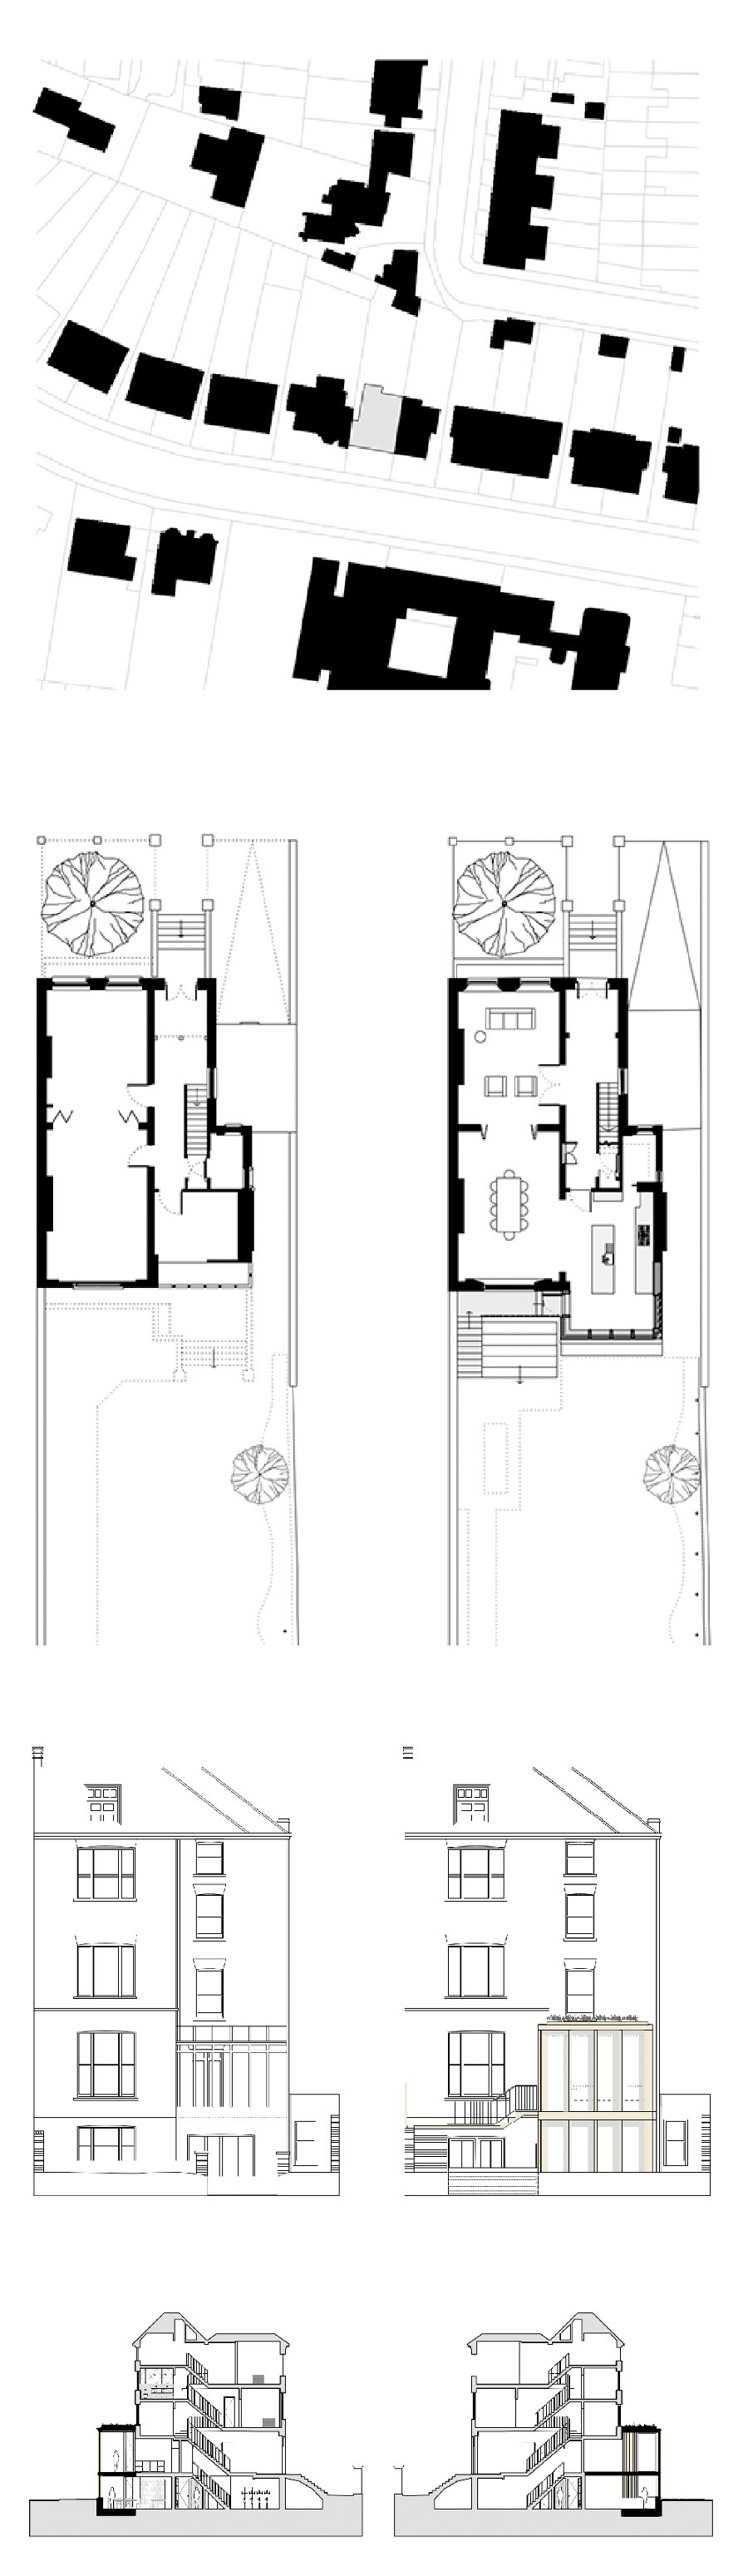 Georgian Bay von Blee Halligan Architects | Einfamilienhäuser